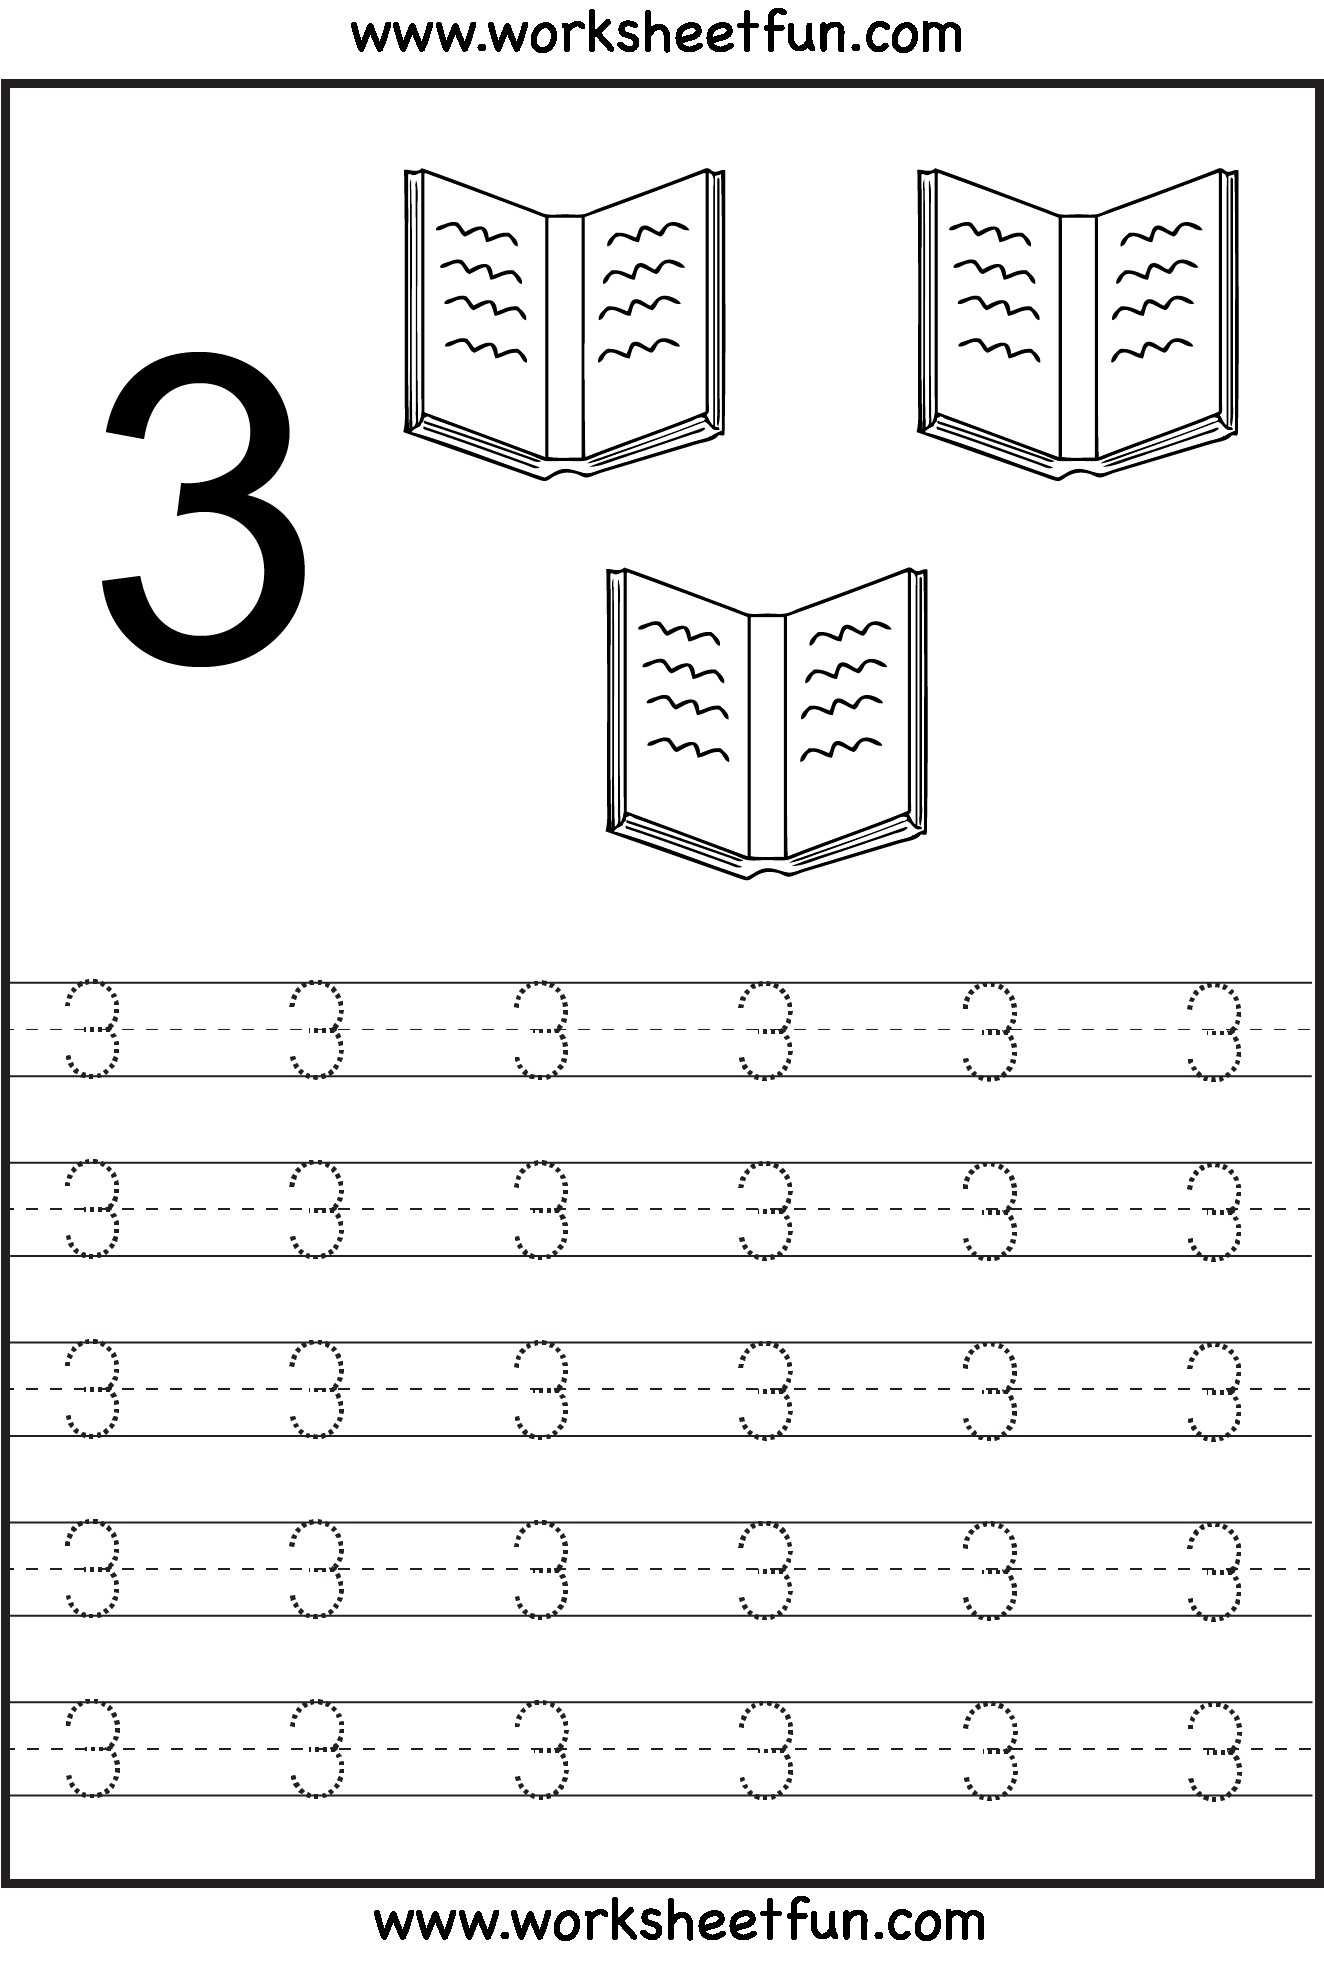 Preschool Number Worksheets or Printable Counting Worksheets Preschool New Number Tracing Math